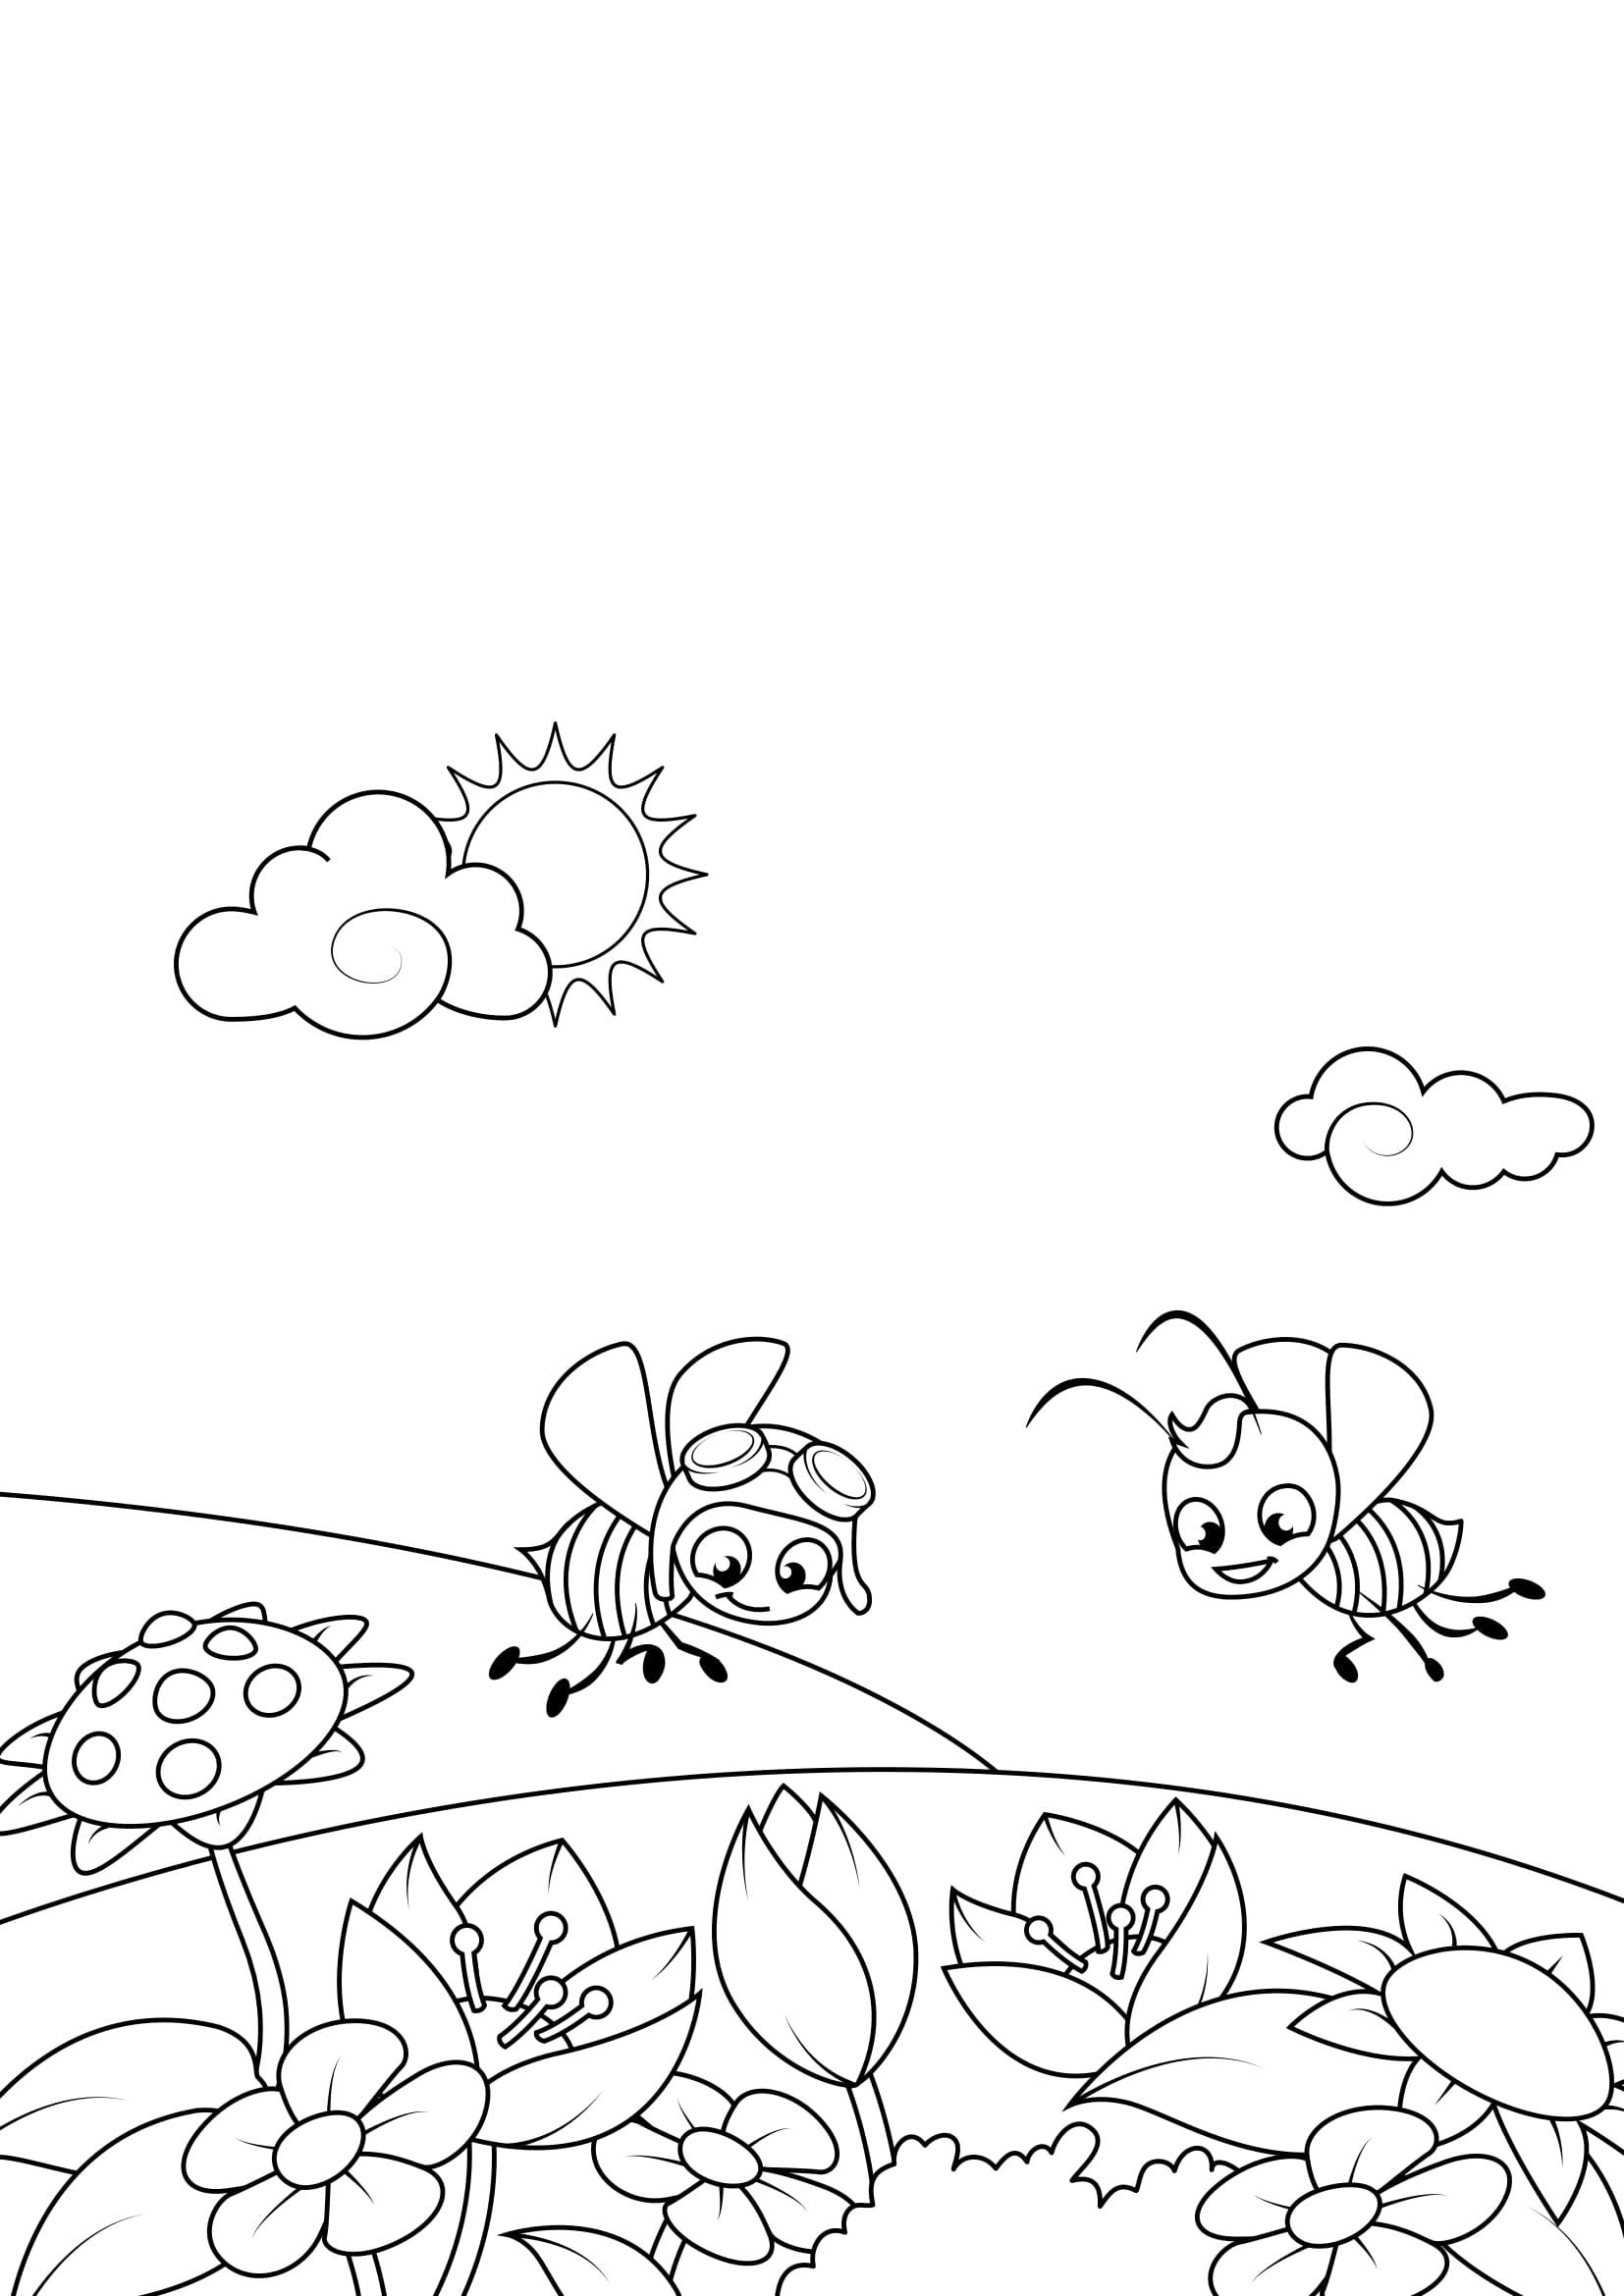 Disegno da colorare primavera api in giardino disegni for Immagini sulla primavera da stampare e colorare